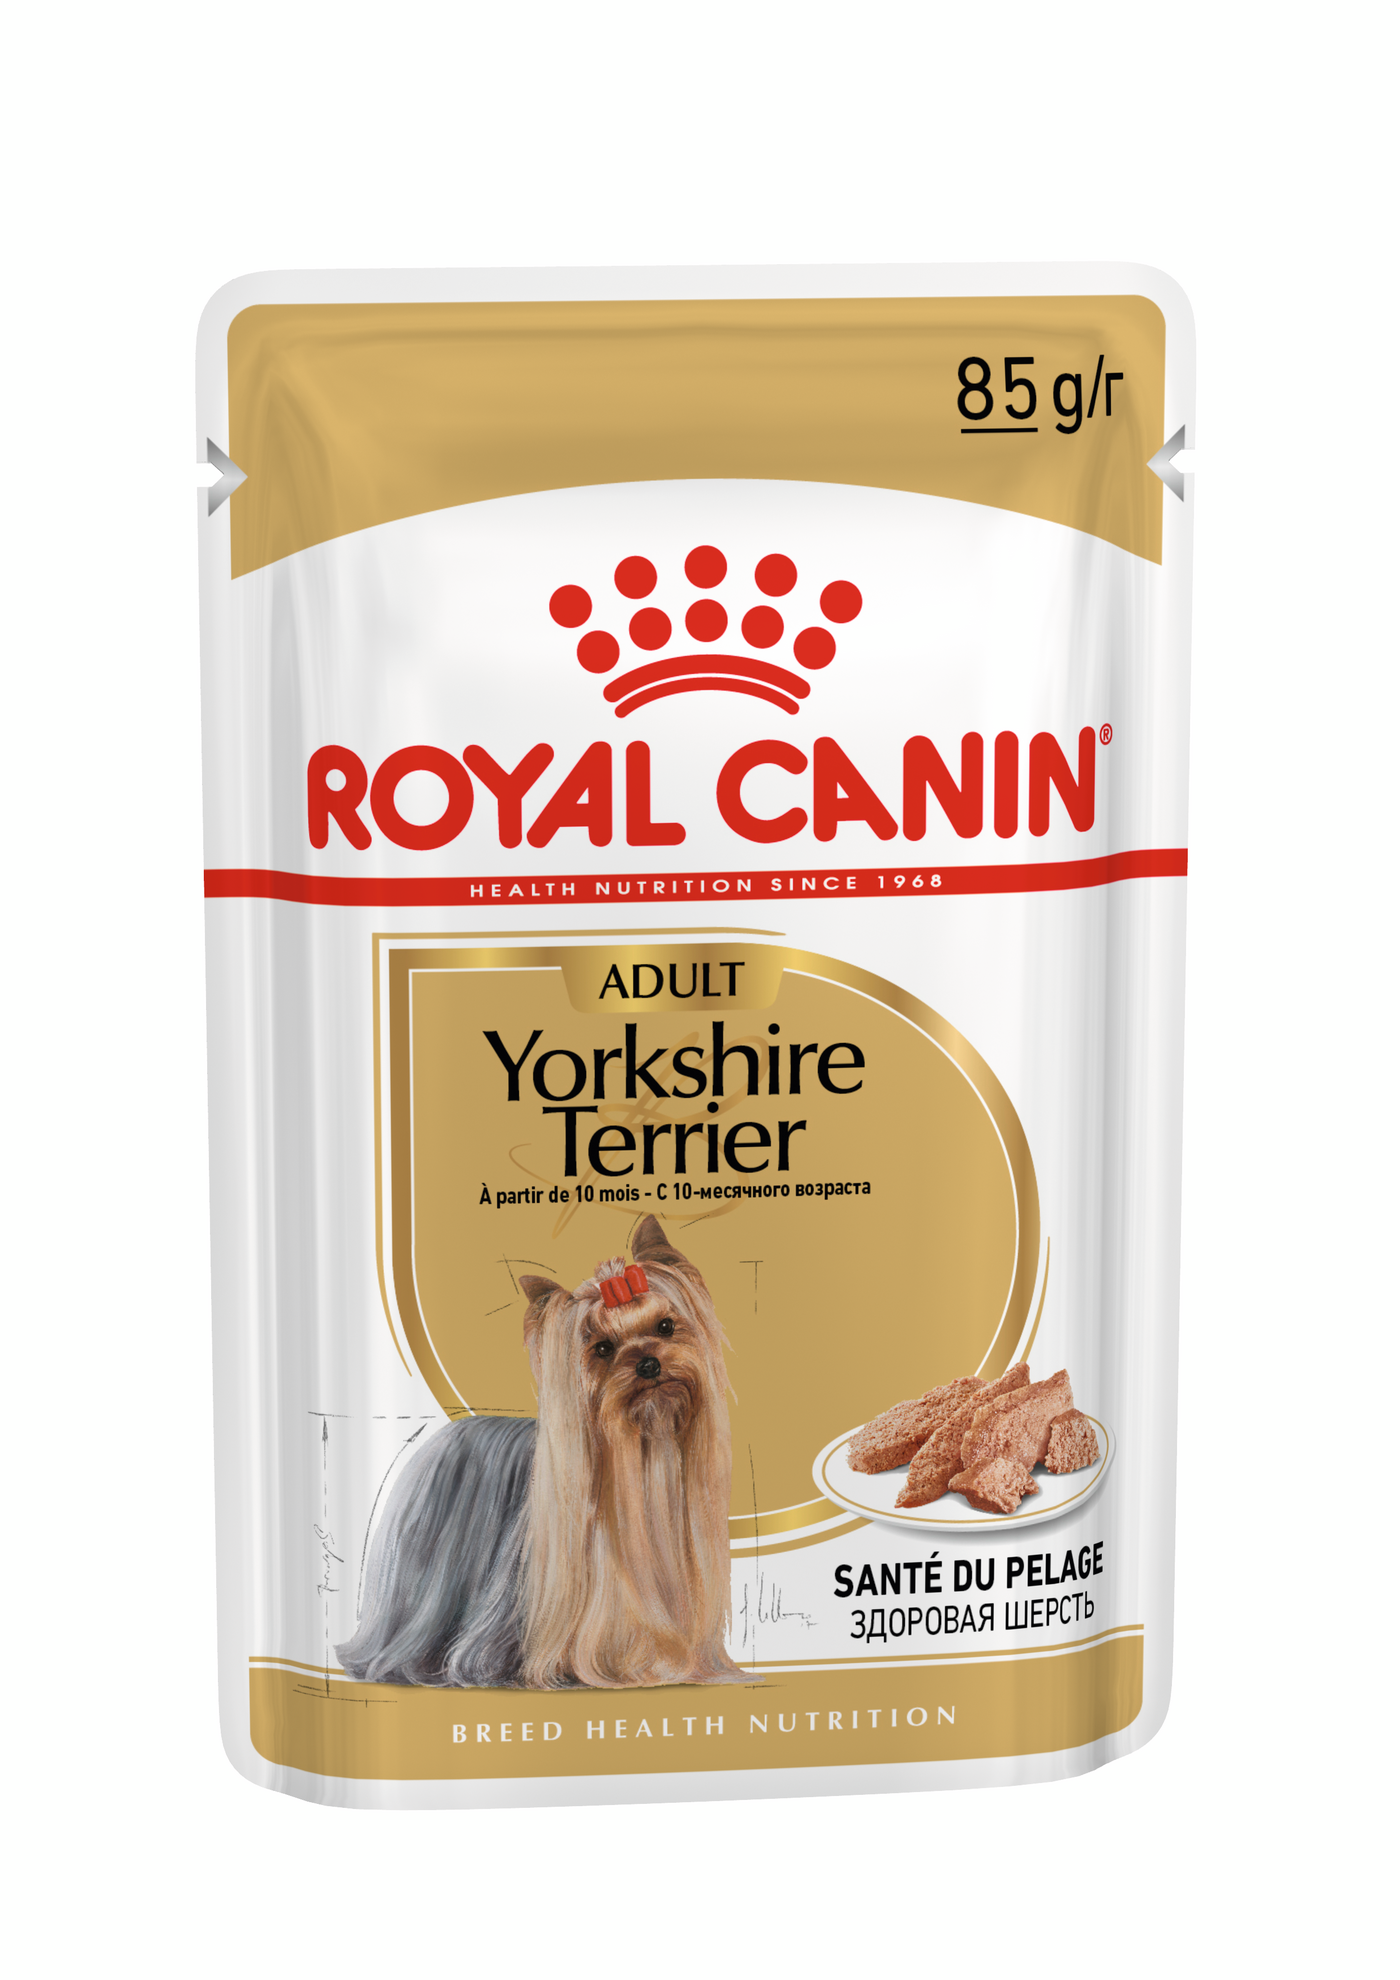 Yorkshire Terrier Loaf